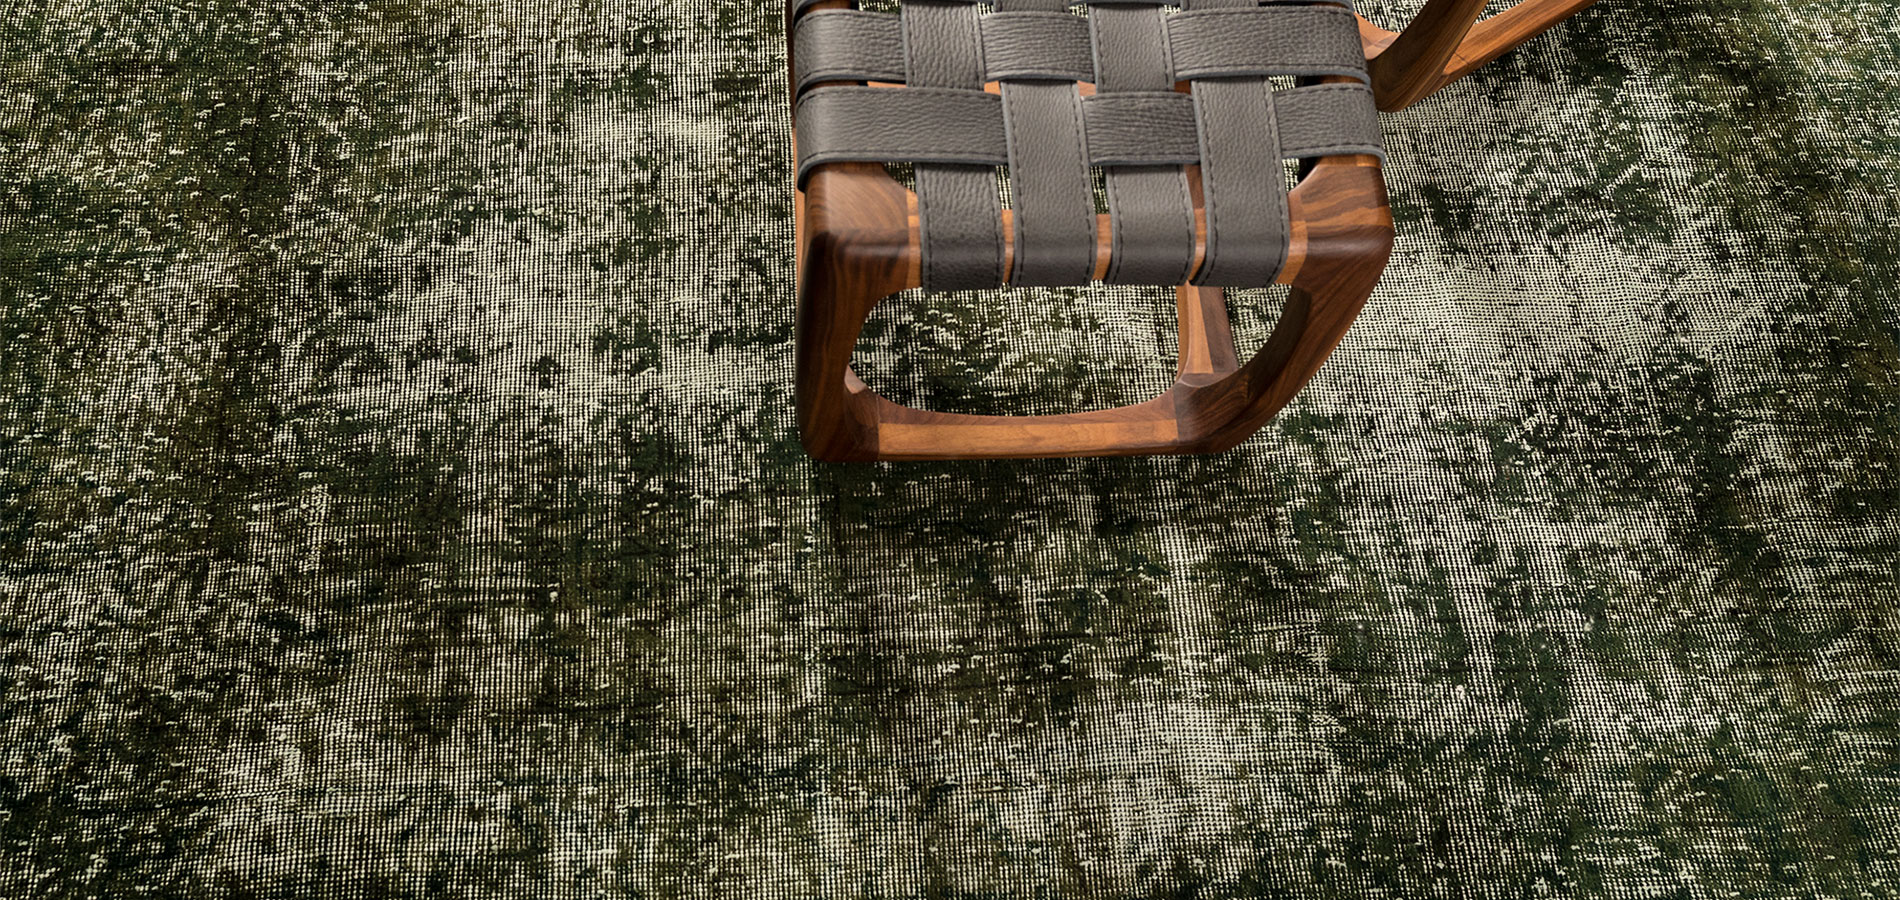 Teppich Bodenschätze von der Teppichfirma remade I Decolorized - Design Teppich Kollektion by Ewald Beyer I München I Deutschland